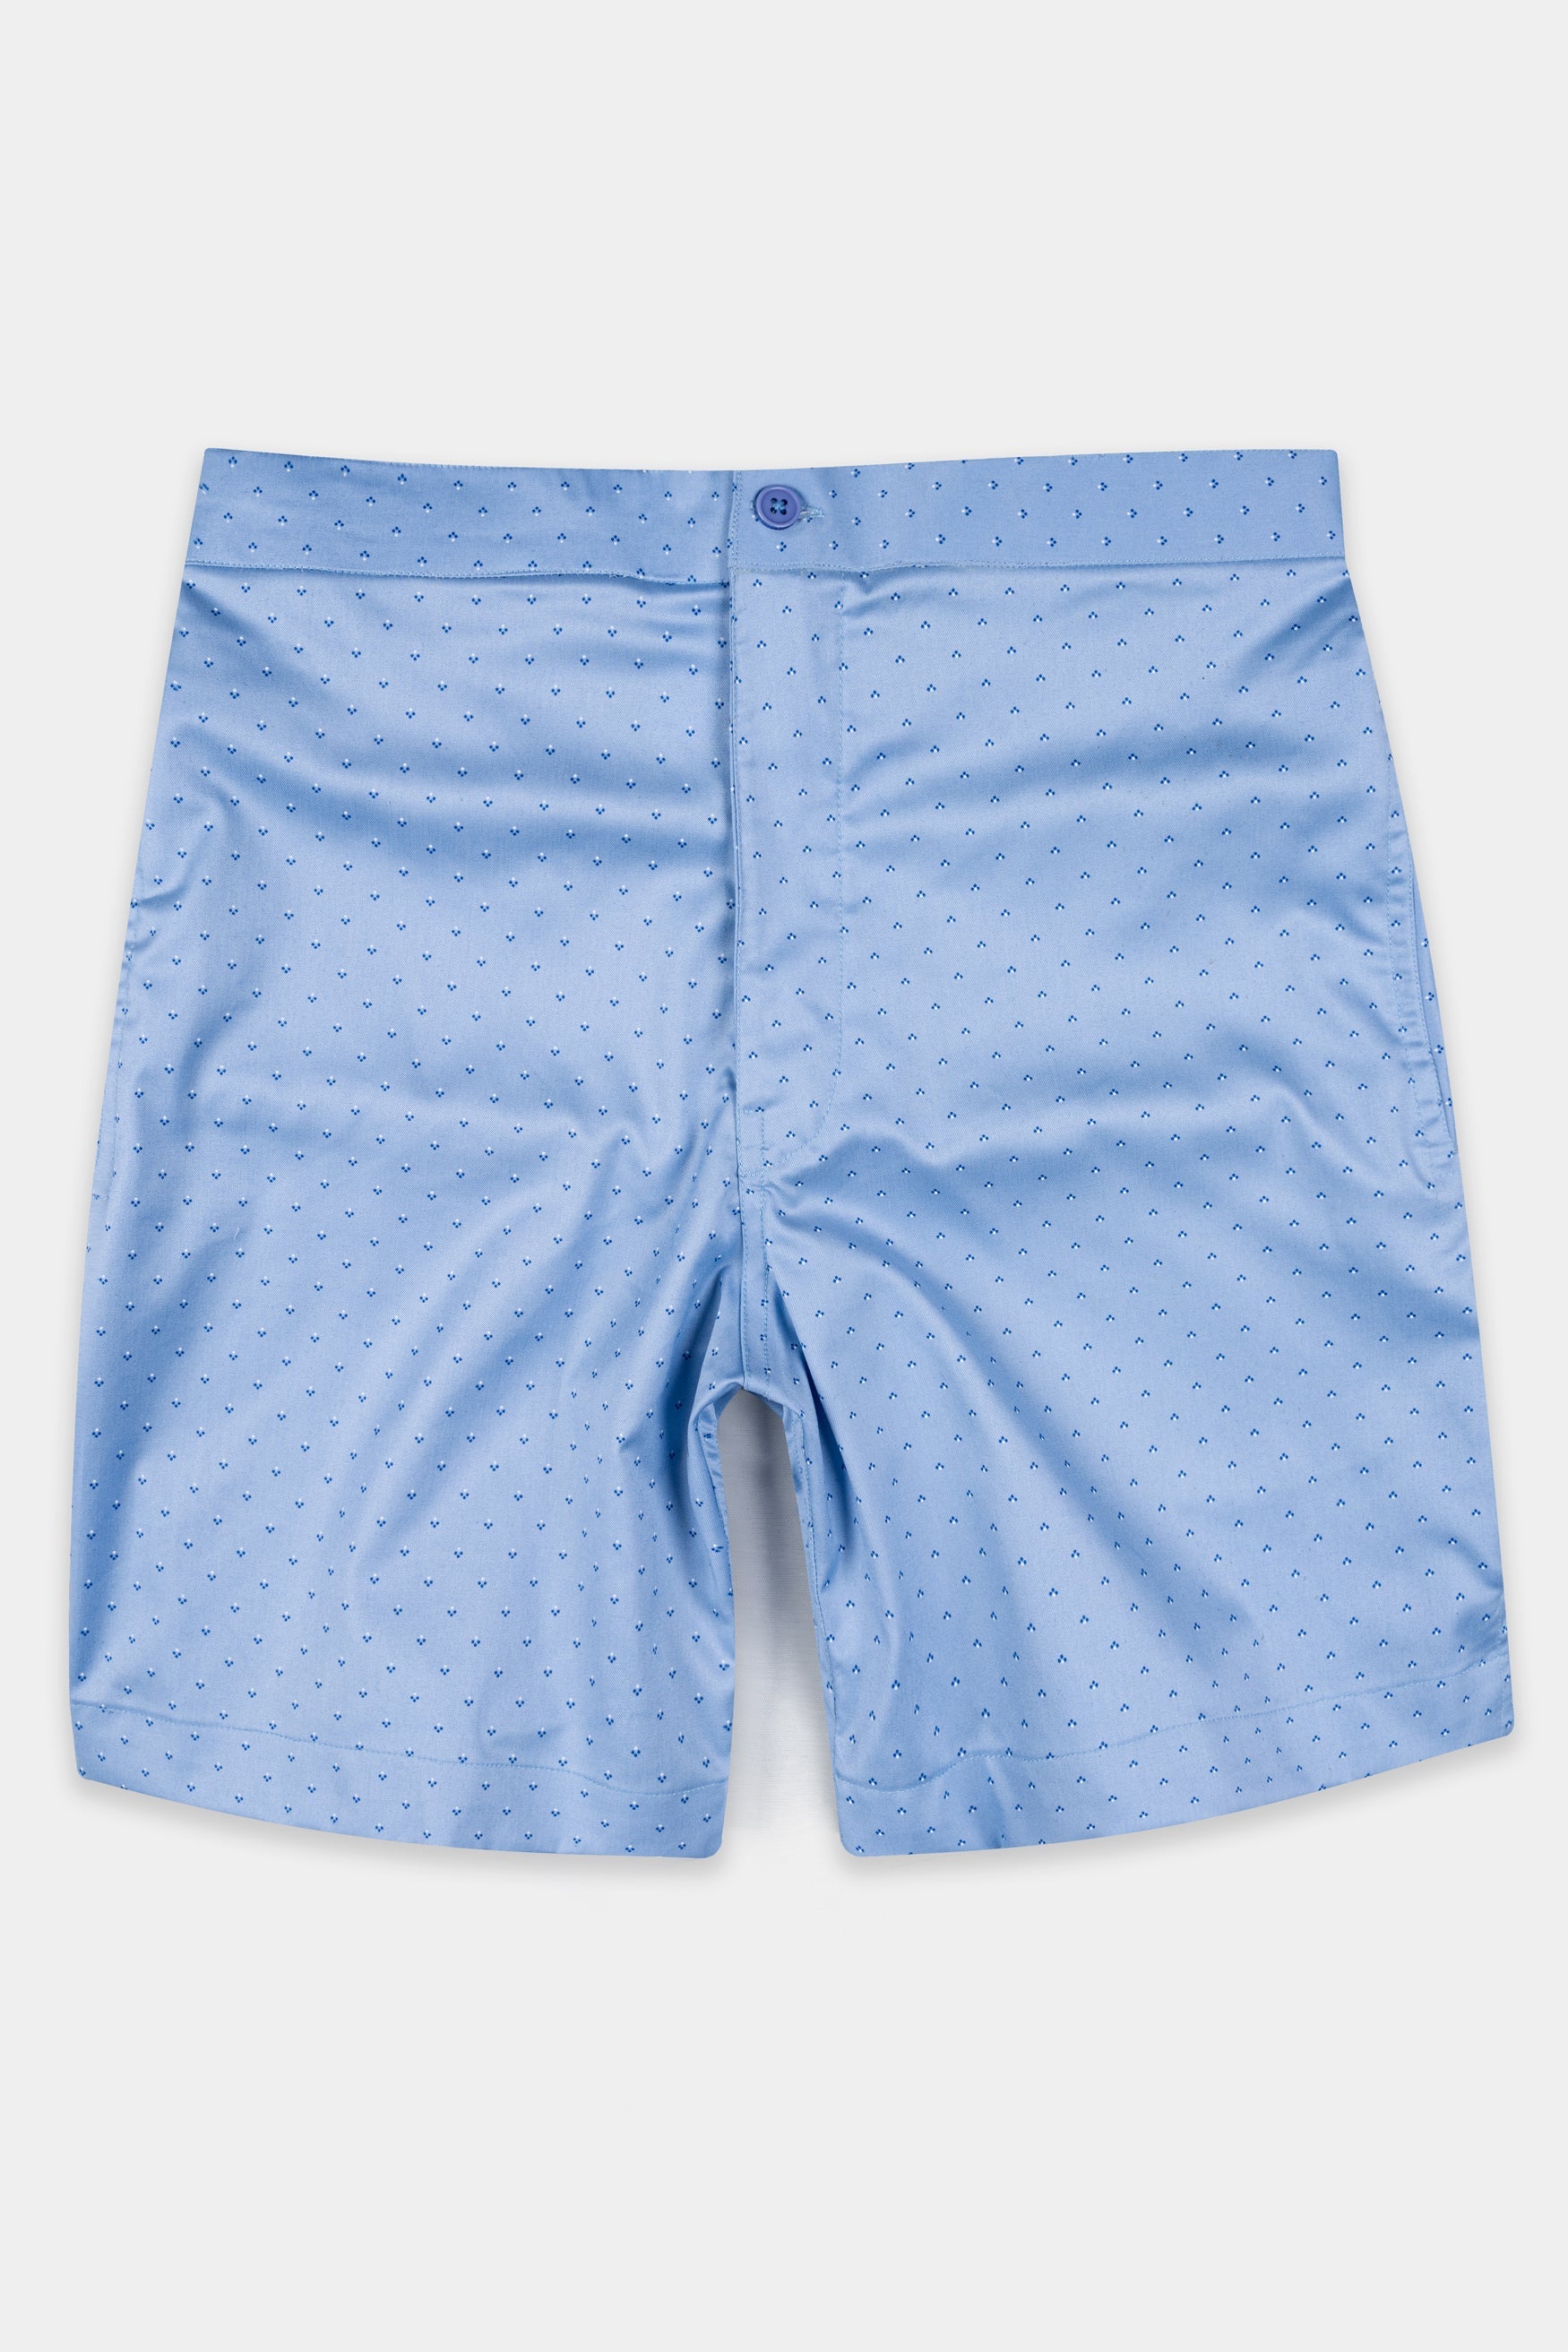 Glacier Blue Printed Twill Premium Cotton Shorts SR385-28, SR385-30, SR385-32, SR385-34, SR385-36, SR385-38, SR385-40, SR385-42, SR385-44